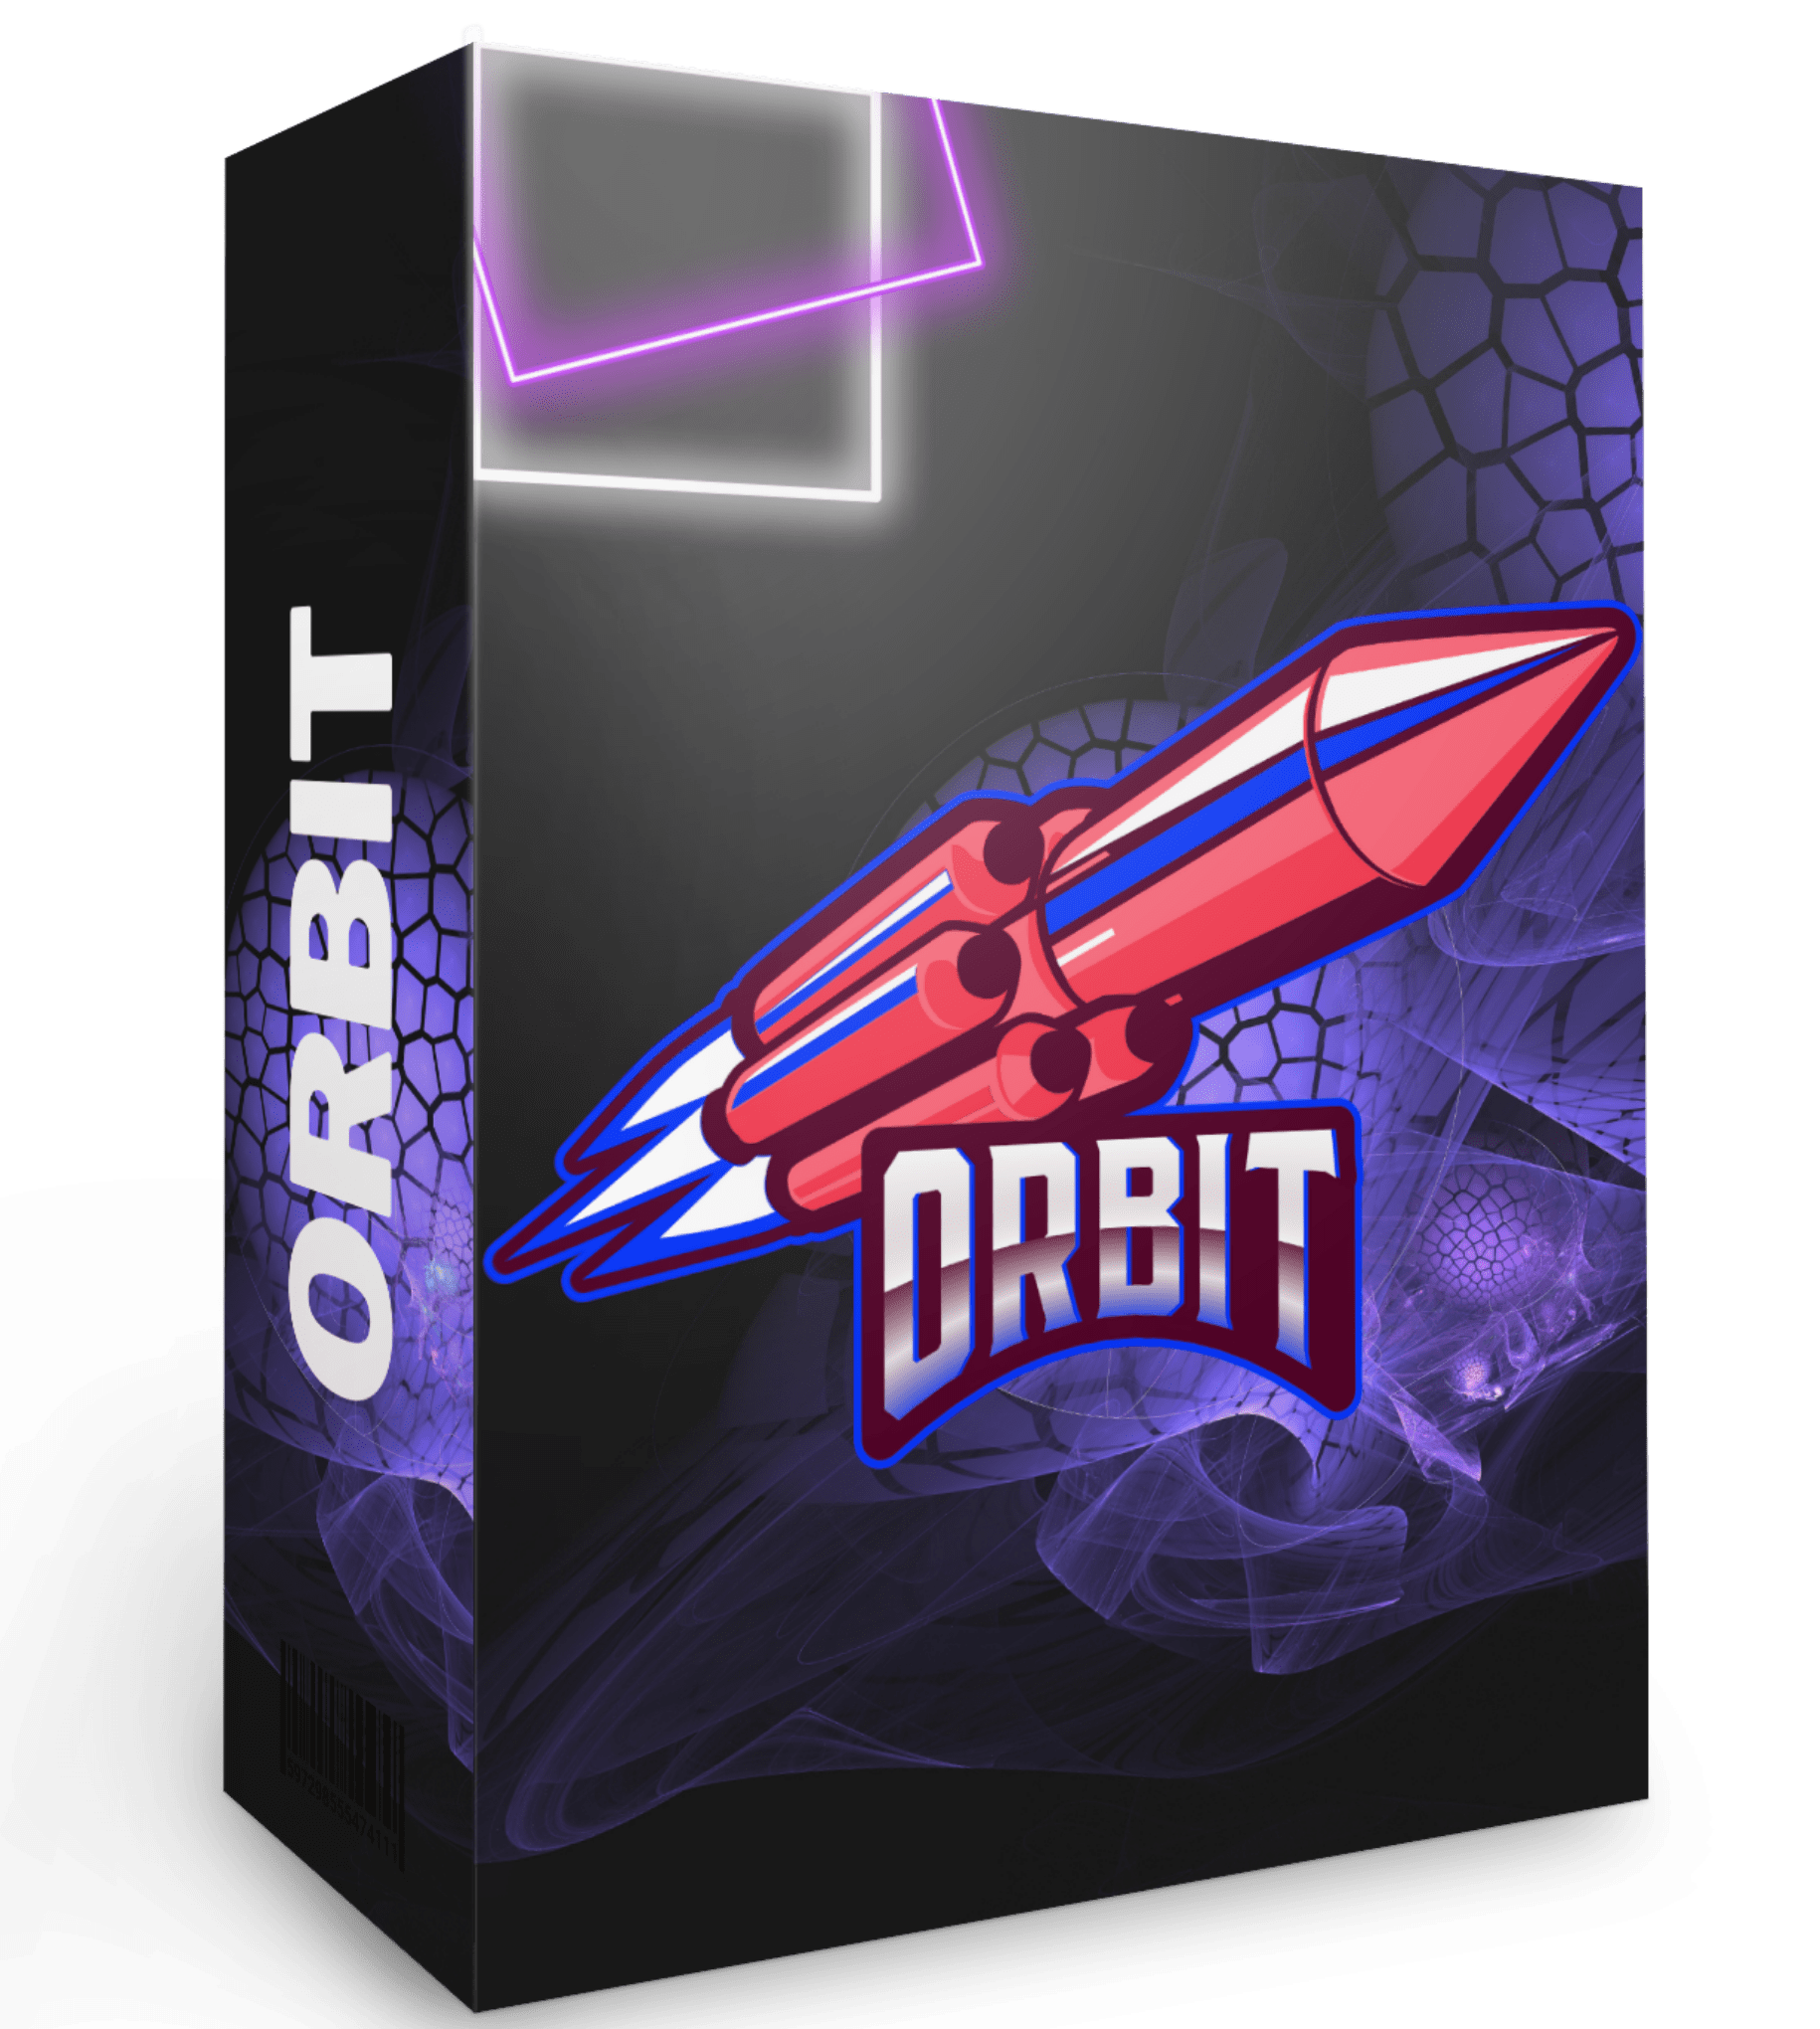 [GET] Justin Chase – Orbit + OTOs Free Download